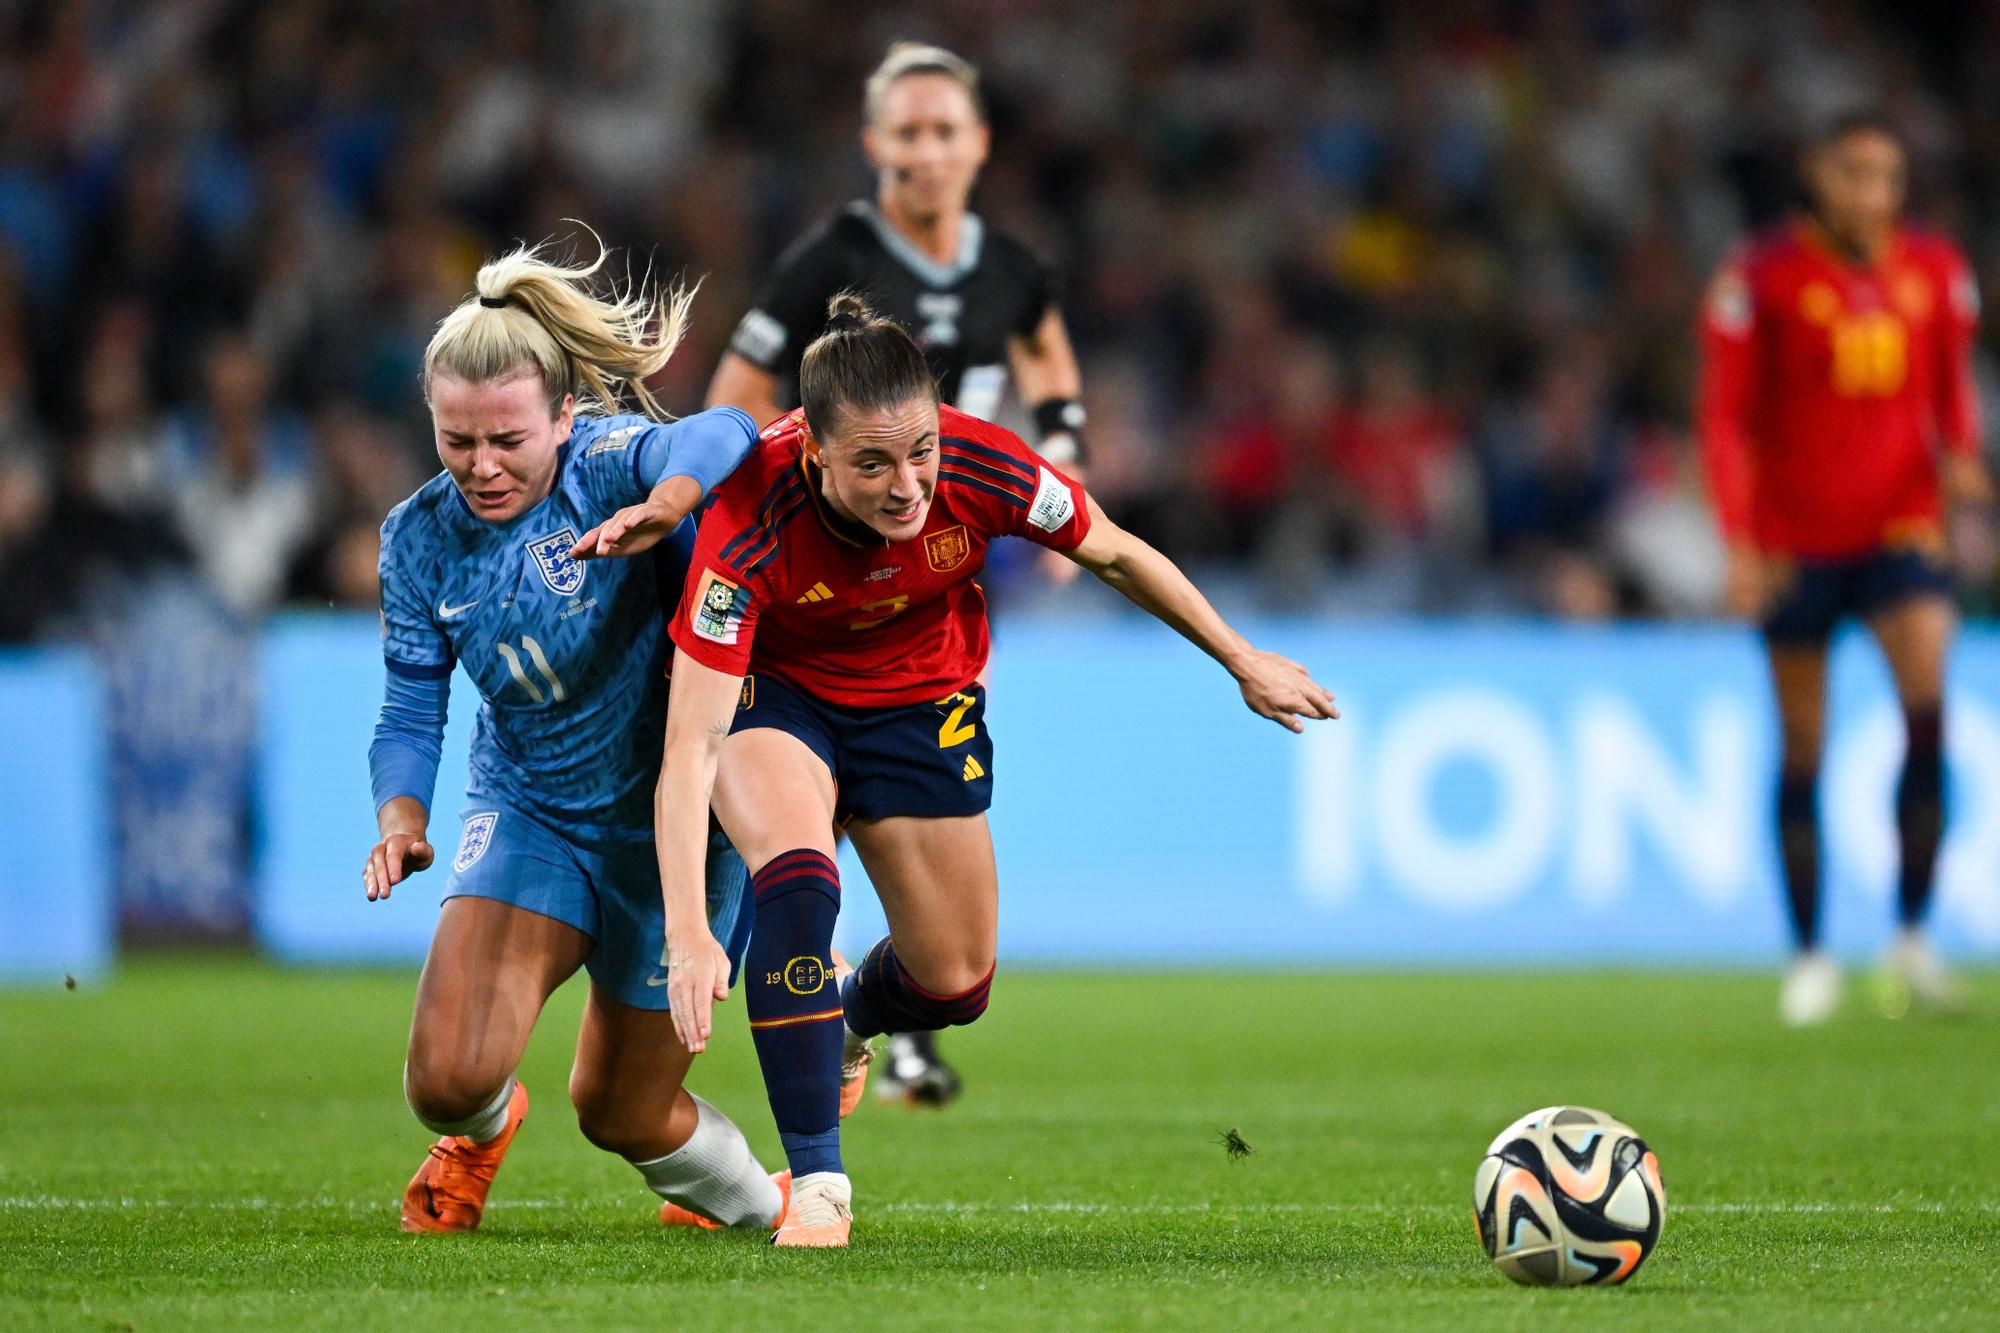 Les millors imatges de la selecció espanyola a la final del Mundial femení